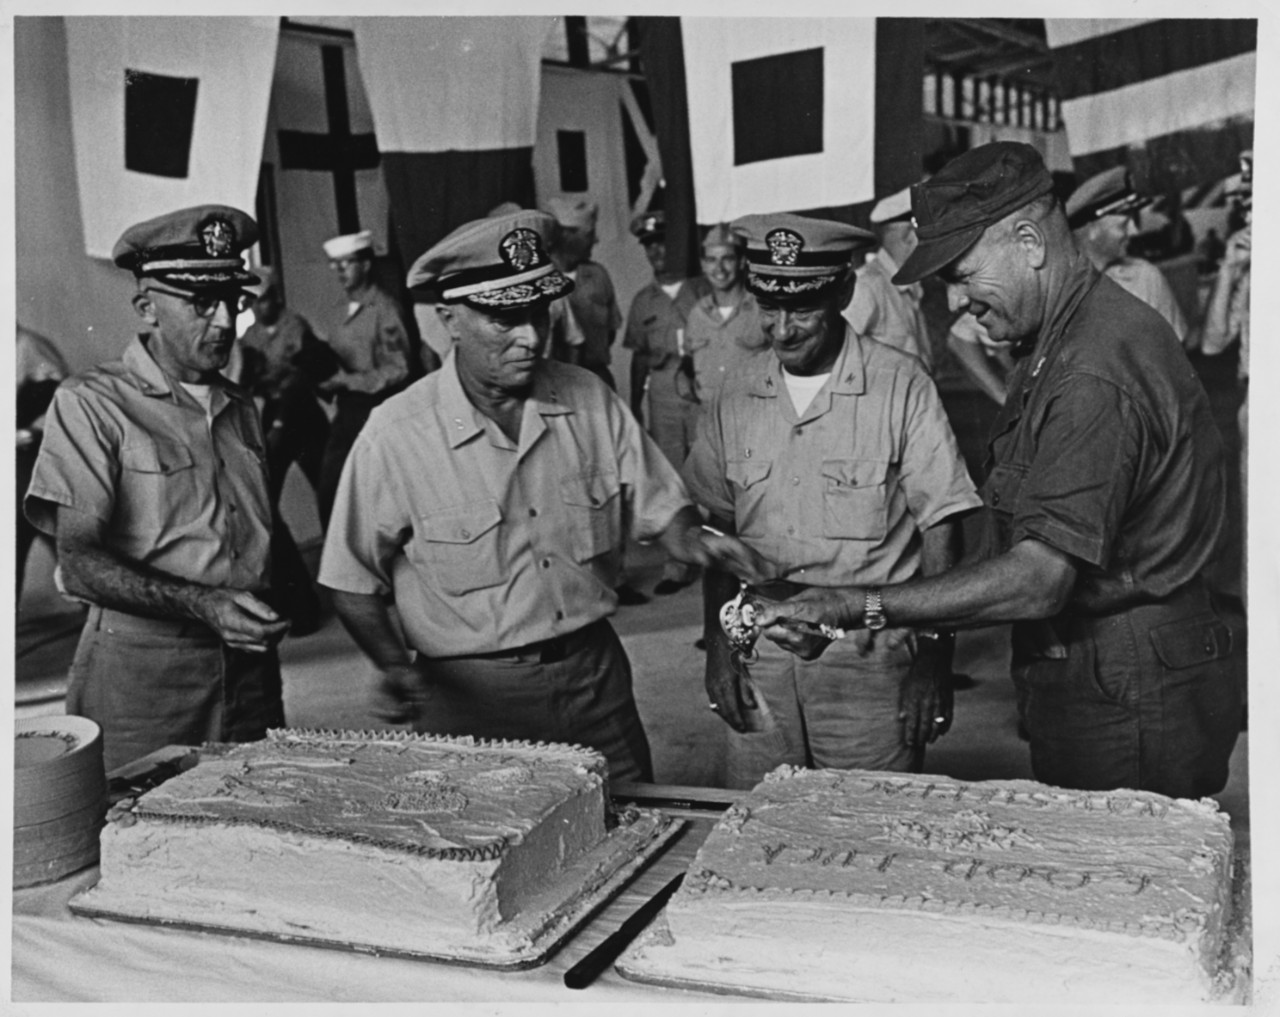 Commemoration Cake Ceremonies